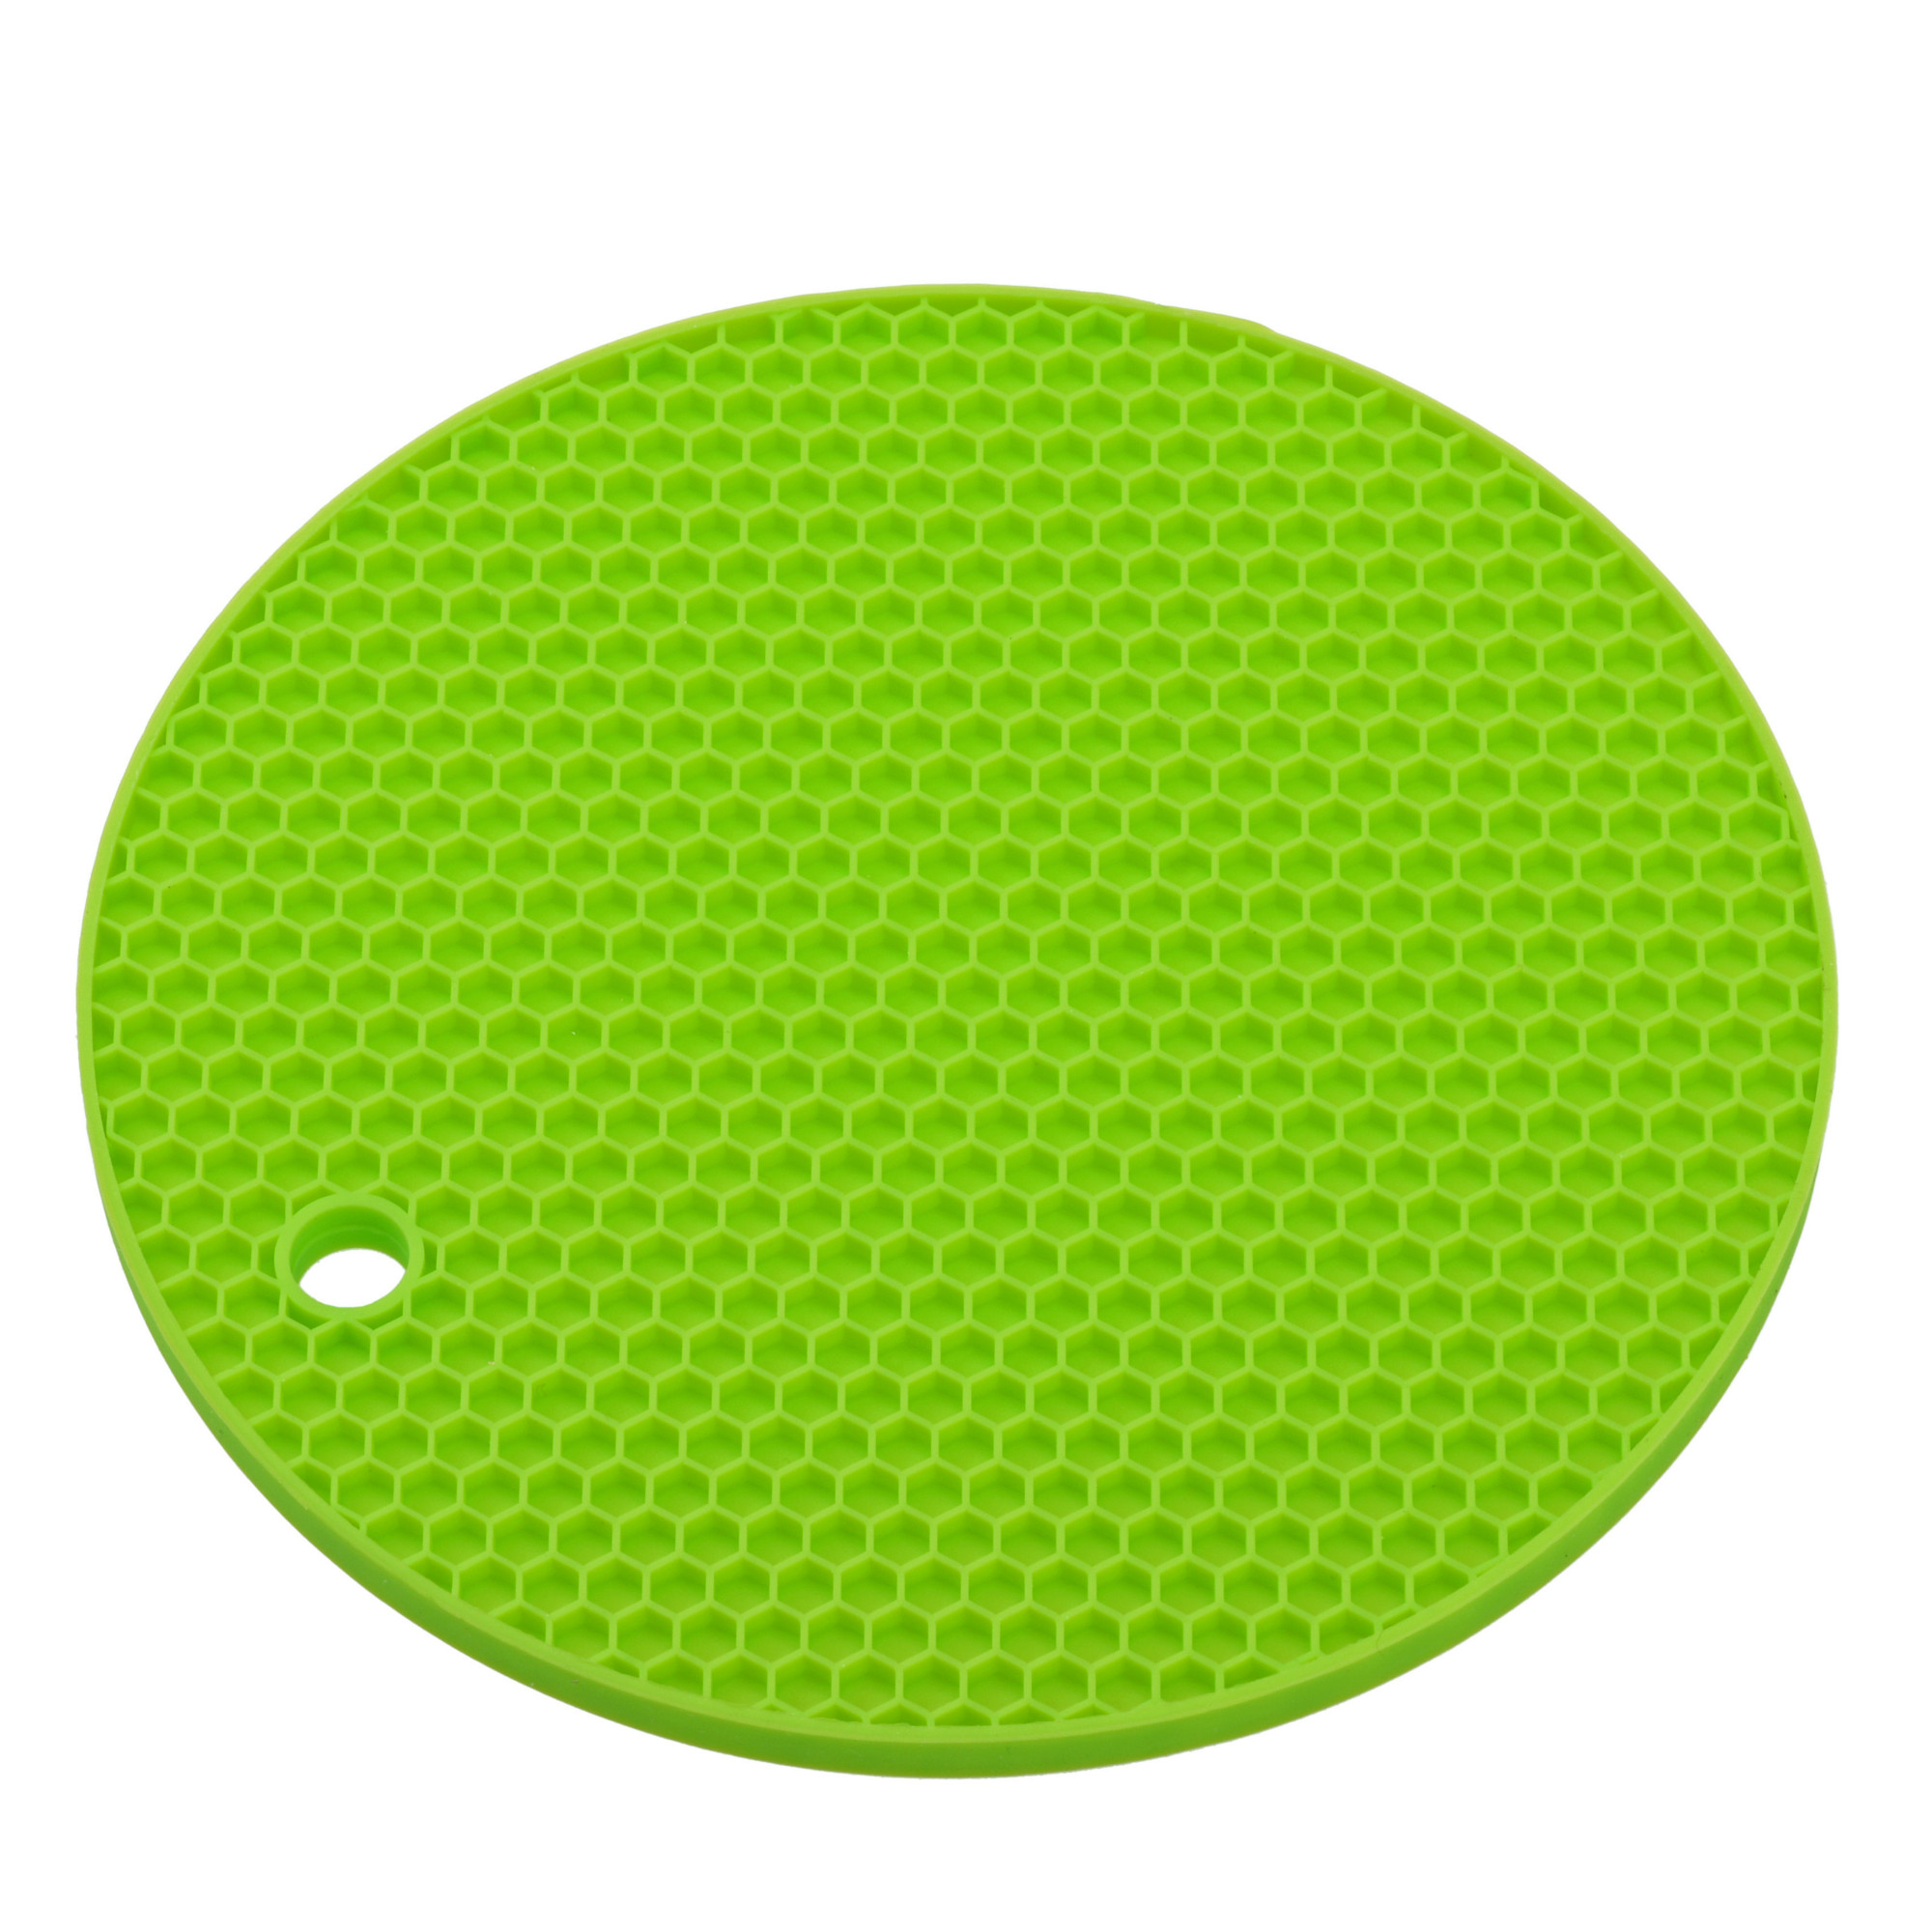 Topfuntersetzer Ø 18 cm, Silikon, grün